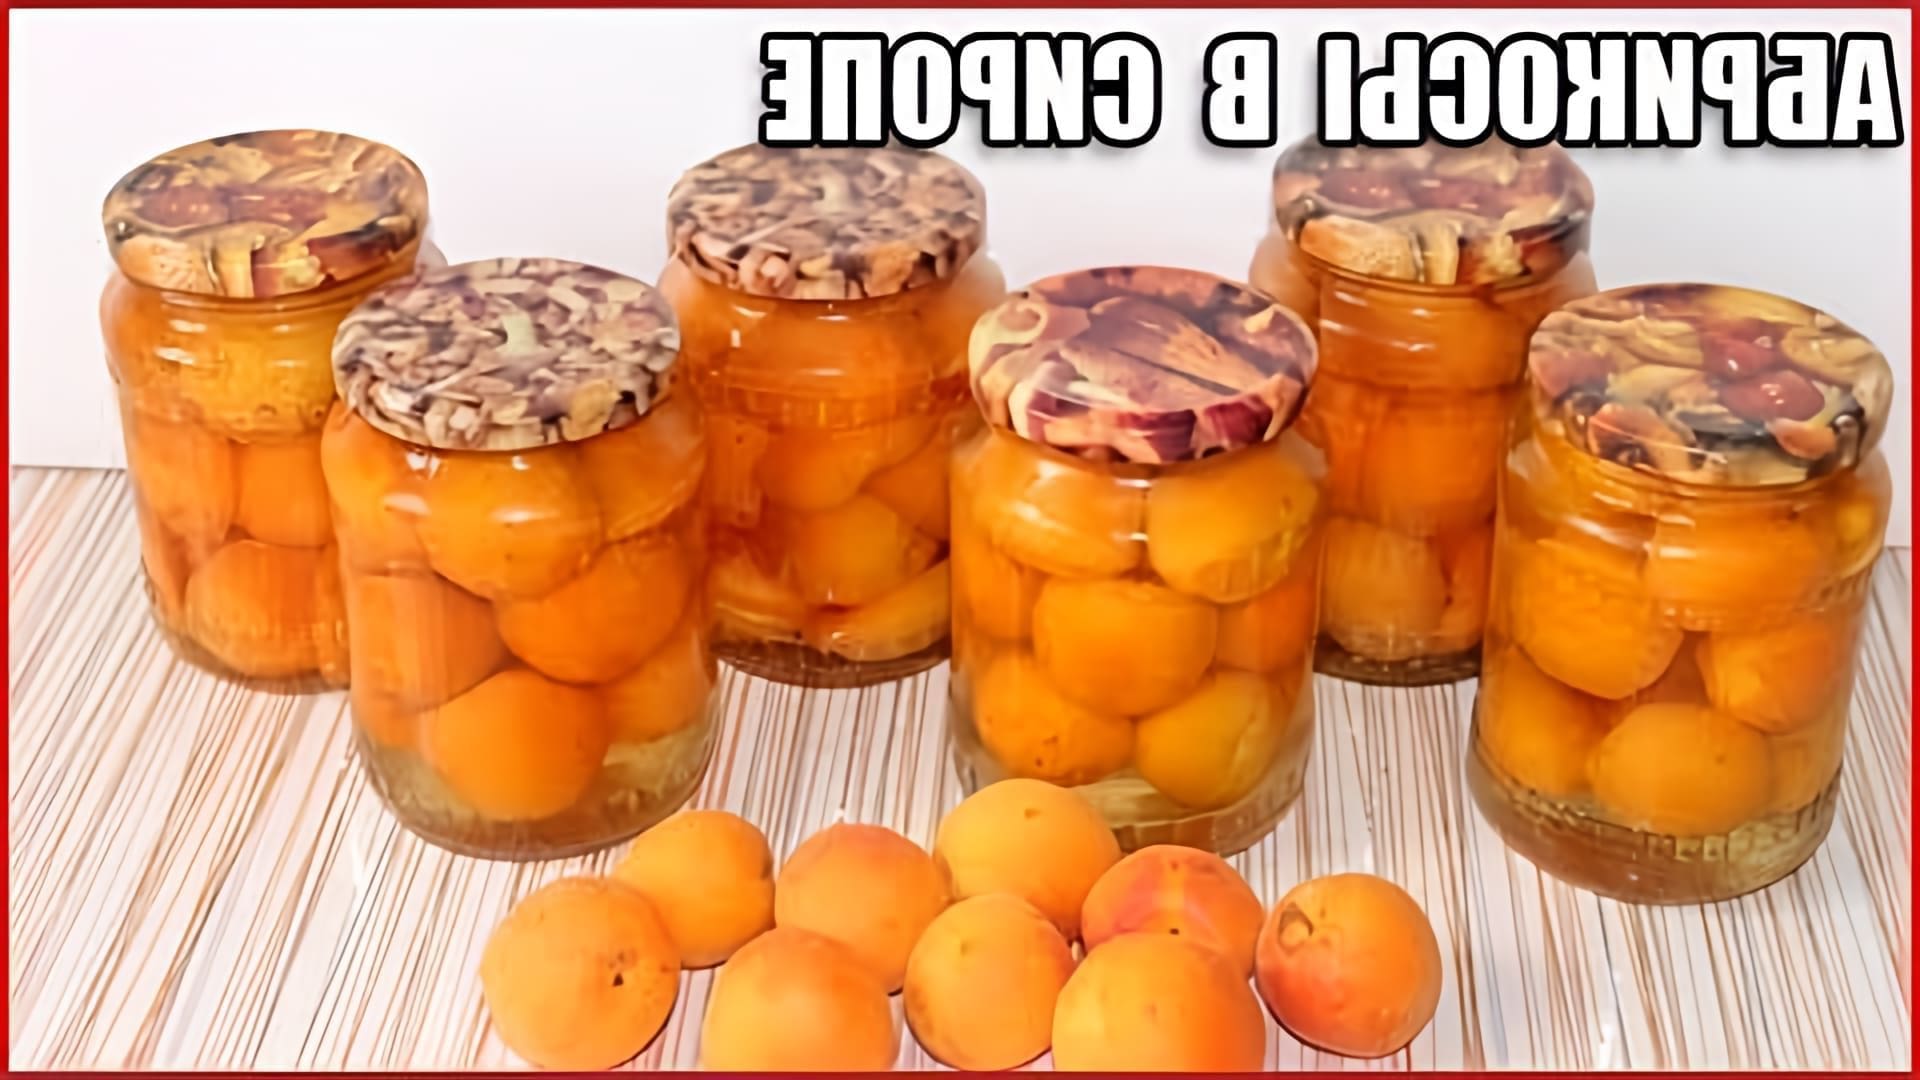 В этом видео демонстрируется процесс консервирования абрикосов в сиропе половинками без стерилизации